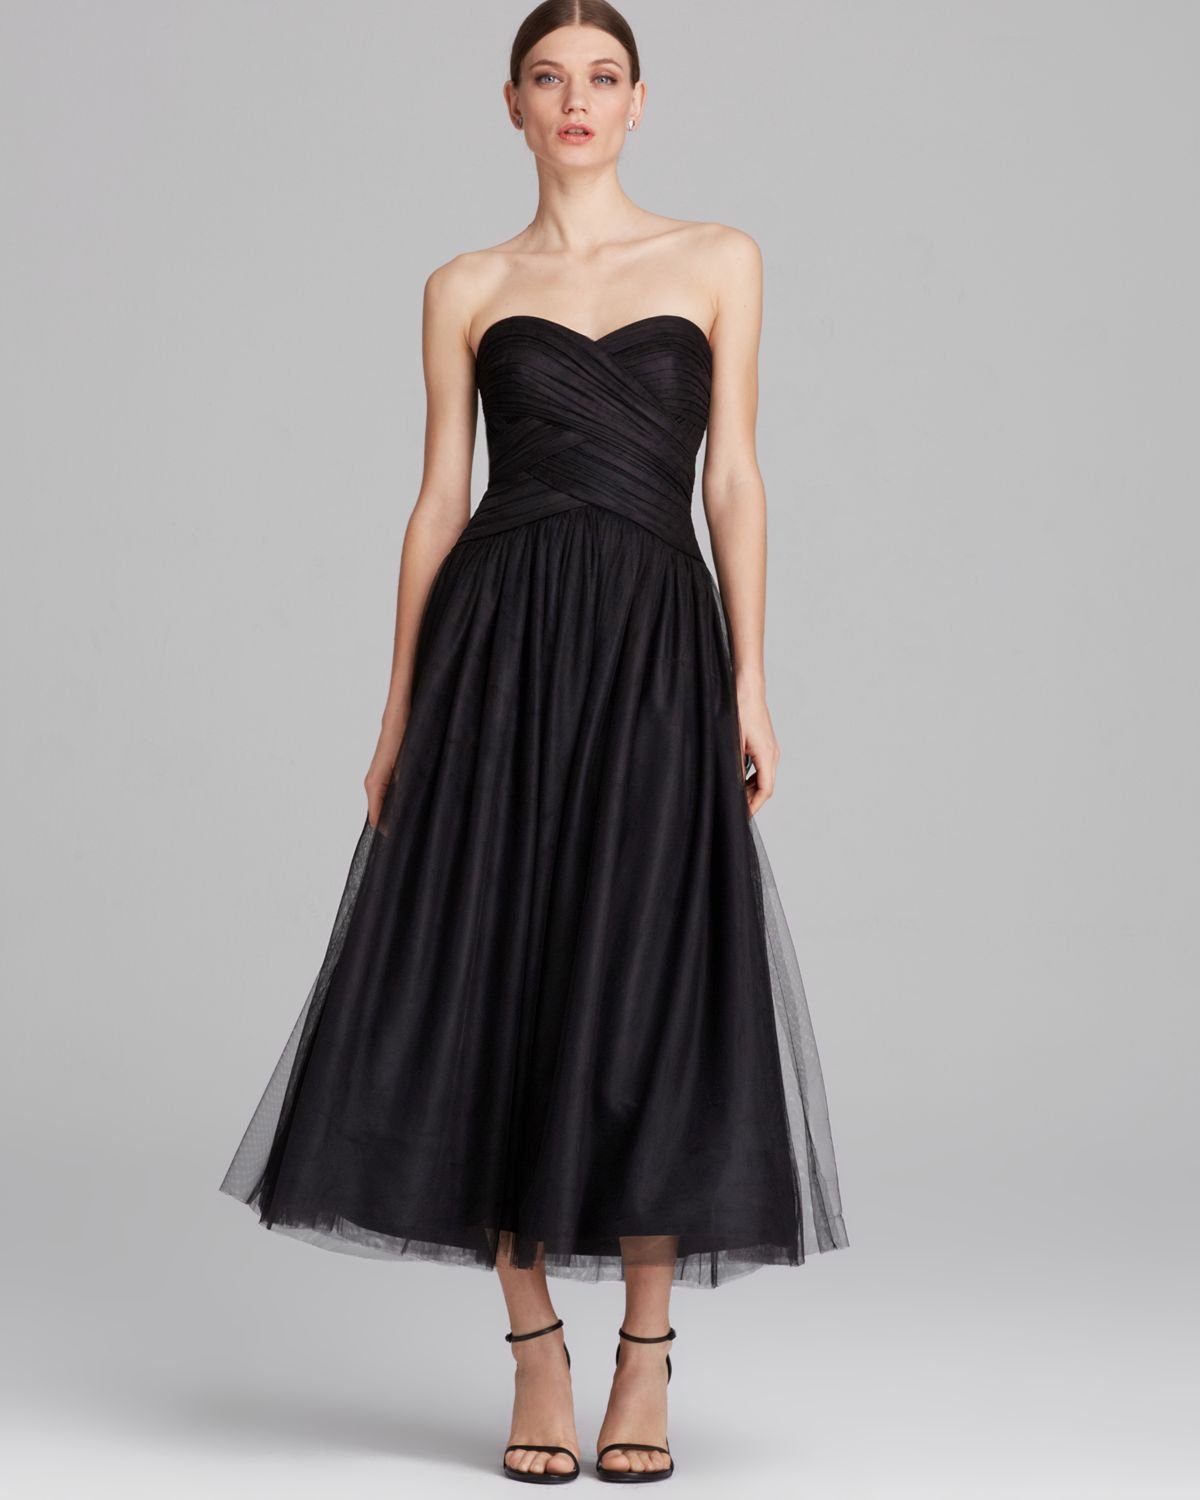 black strapless tea length dress